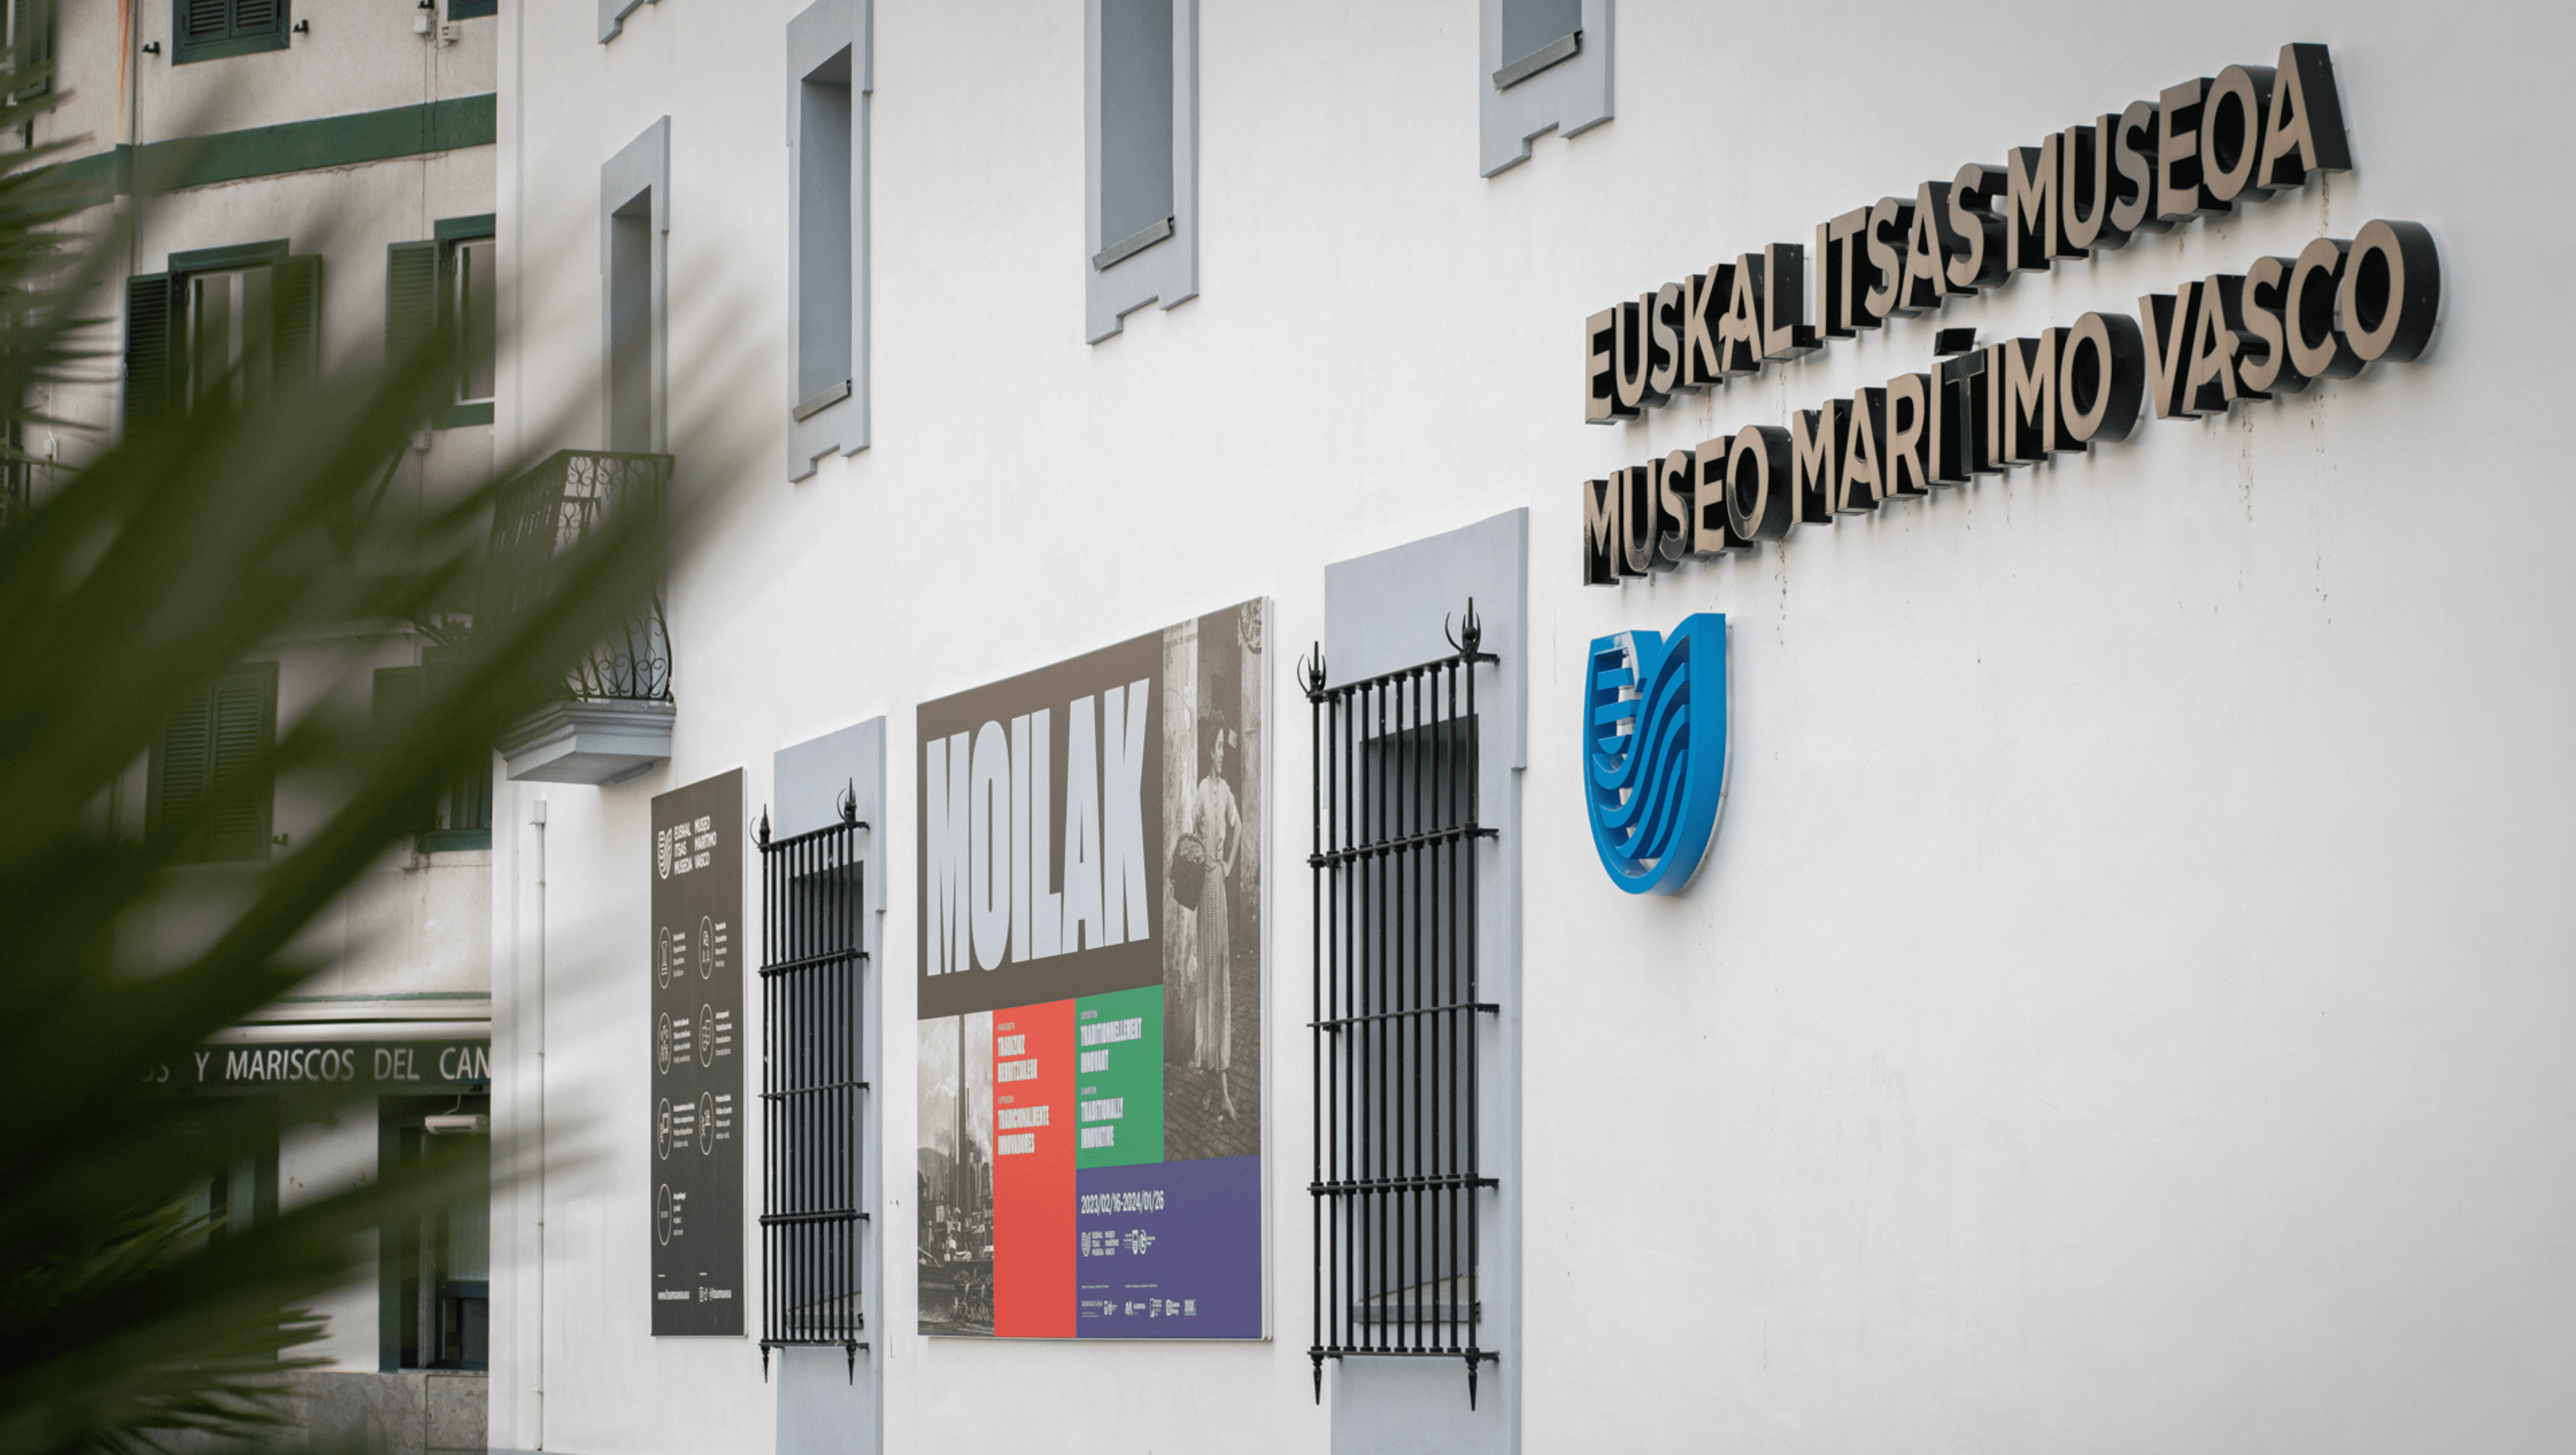 Exterior de la fachada del Euskal itsas Museoa de San Sebastián en la que se ve el cartel de la exposición Moillak